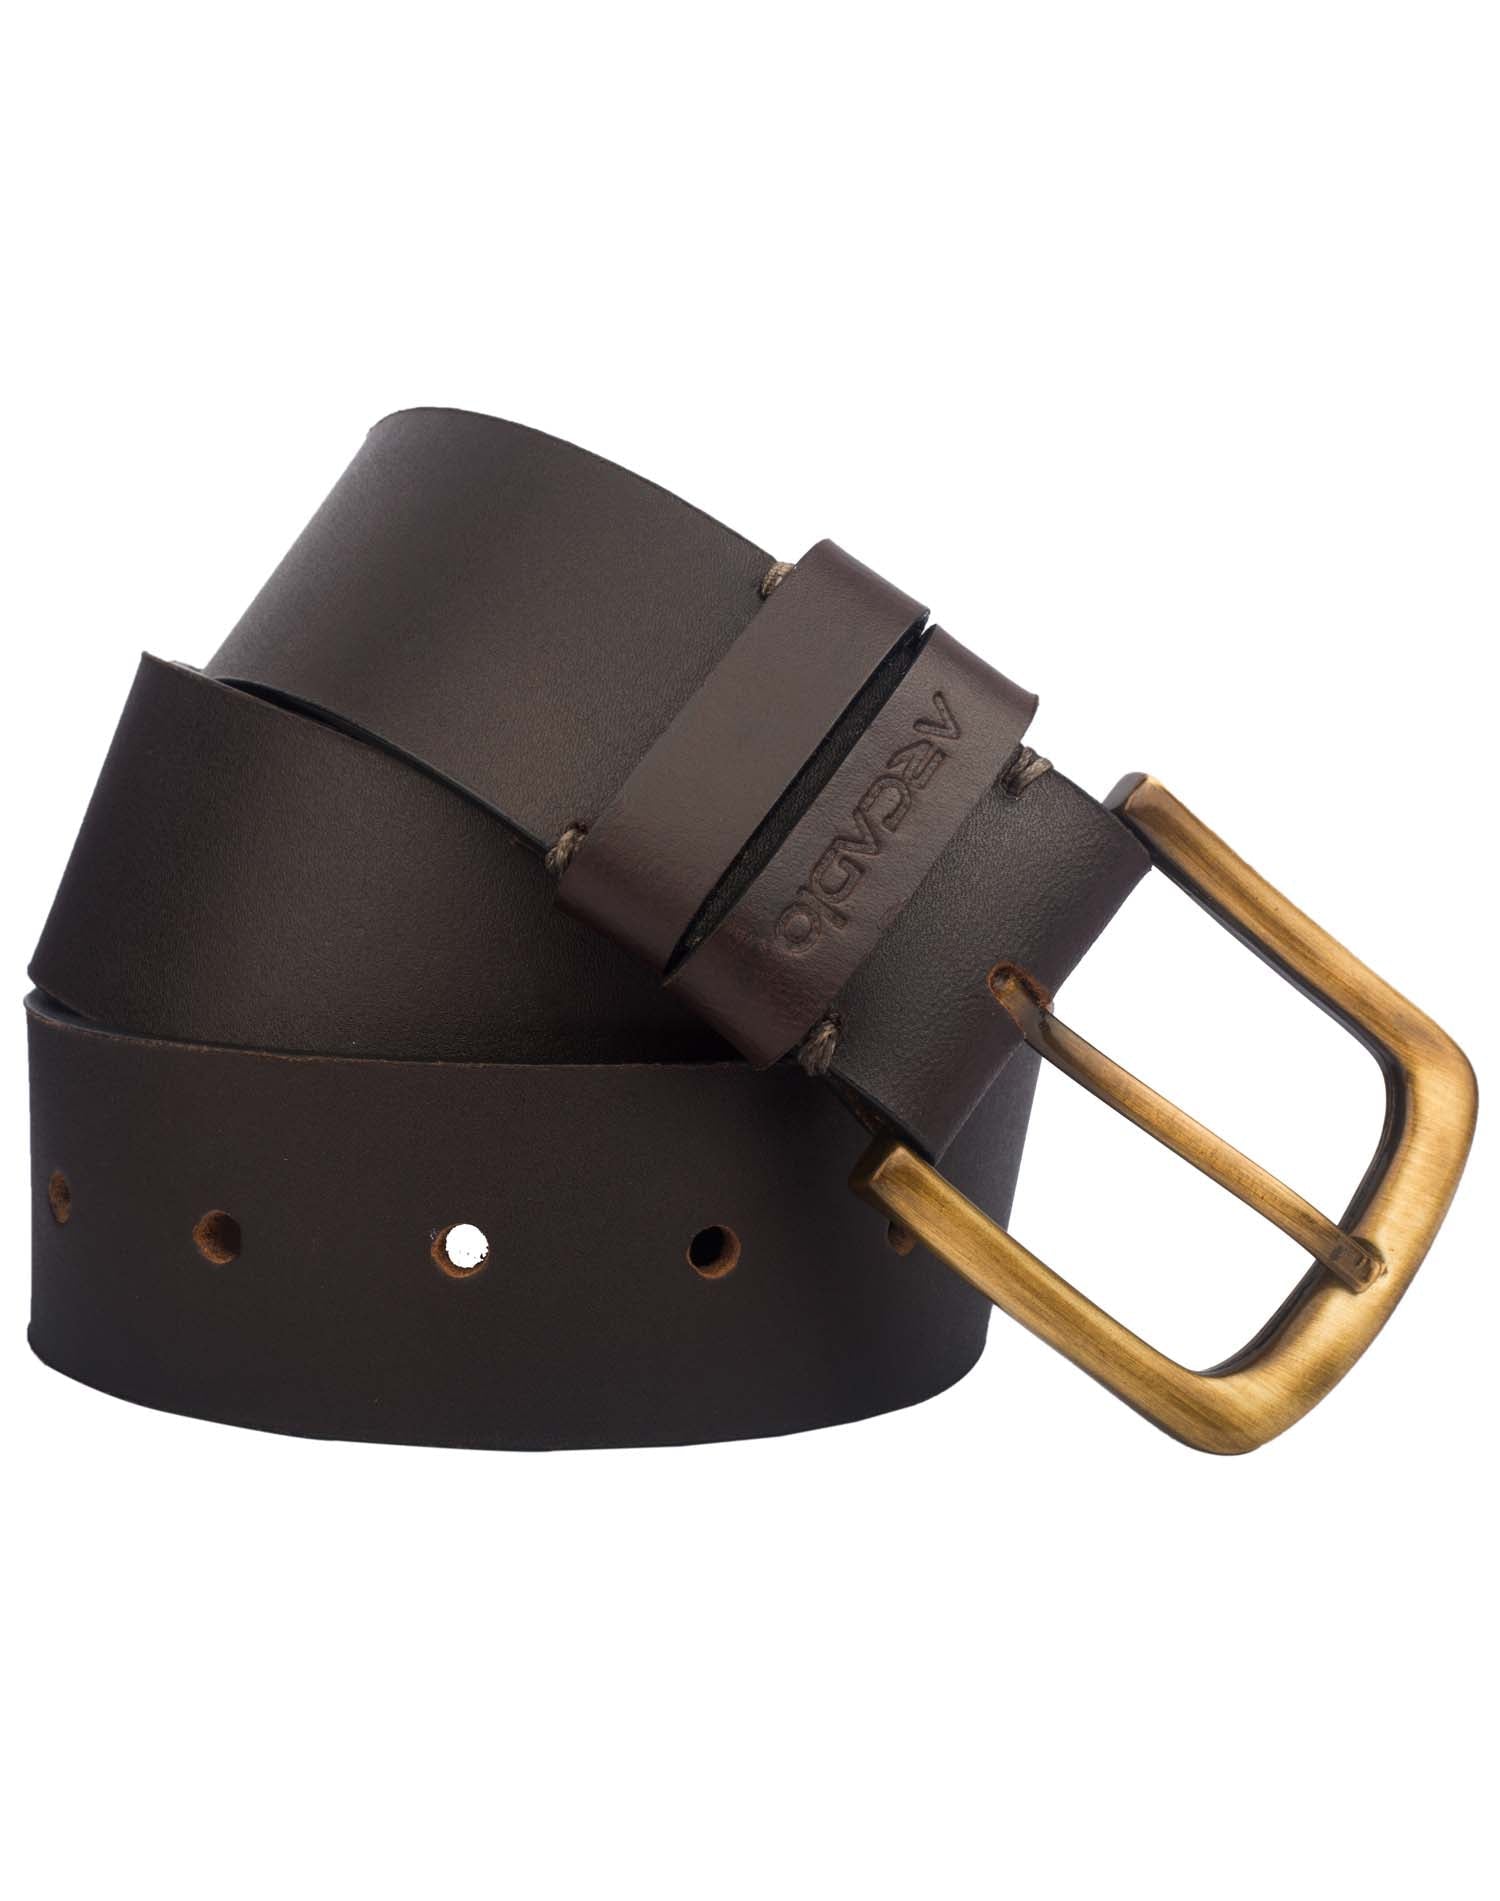 VINTAGE MANIA Leather Belt ARB1016BR ARCADIO